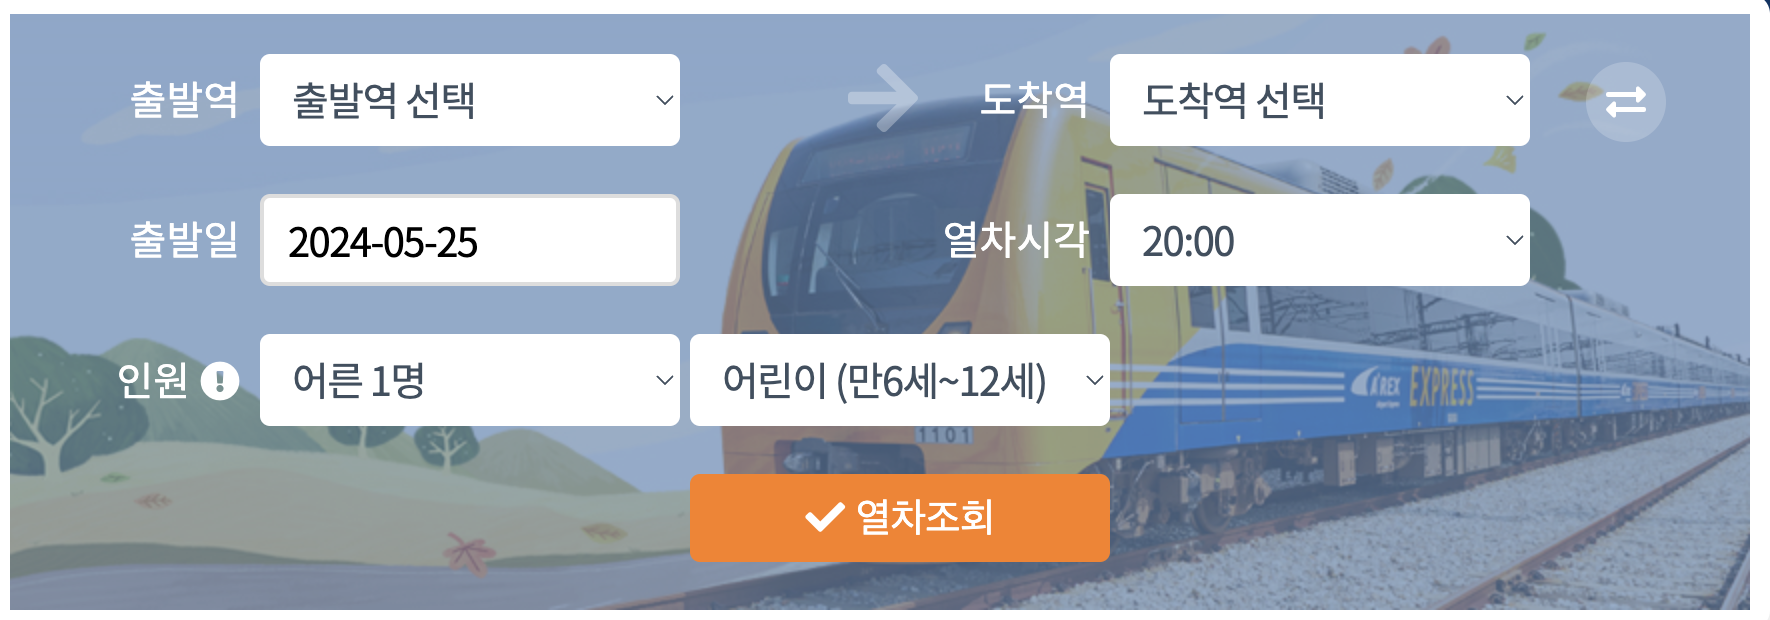 2024 공항철도 시간표 (일반열차 vs. 직통열차) 바로가기